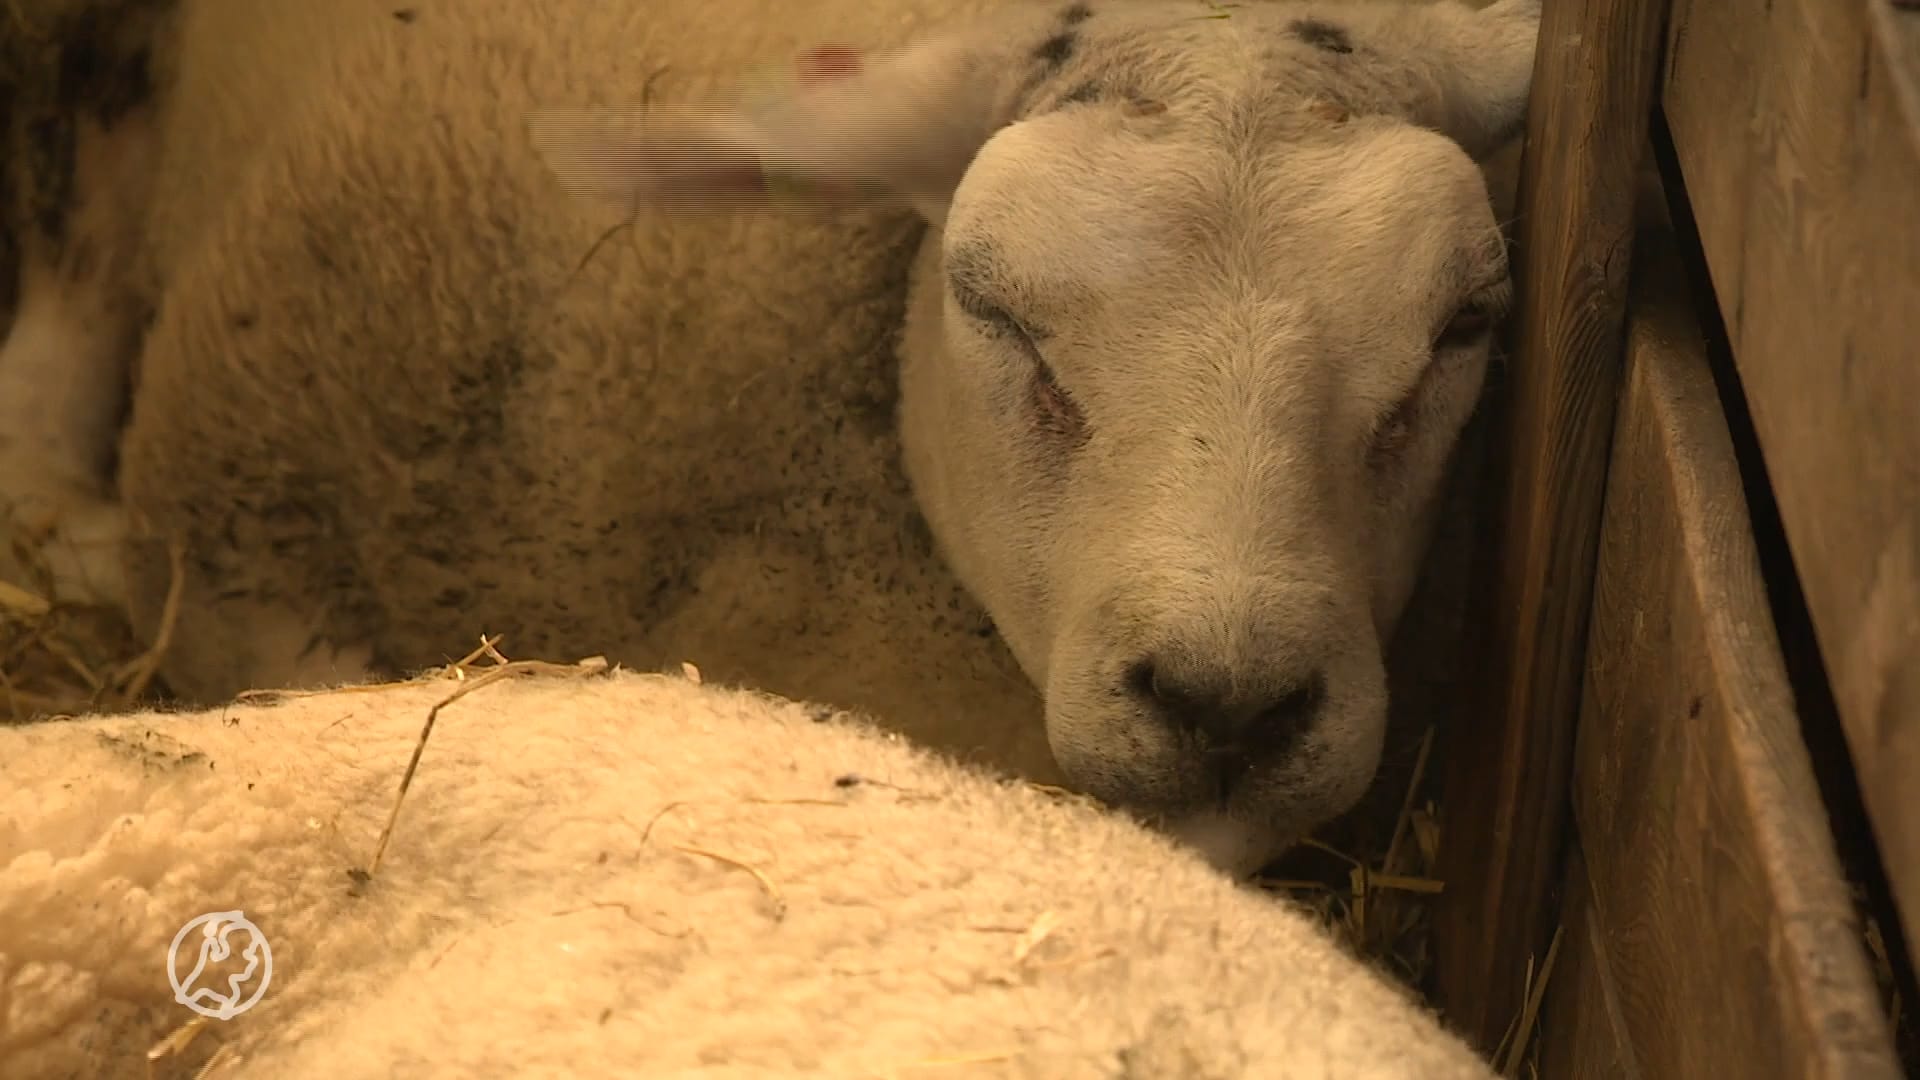 Blauwtongvirus heeft vrij spel, schapenhouders zijn wanhoop nabij